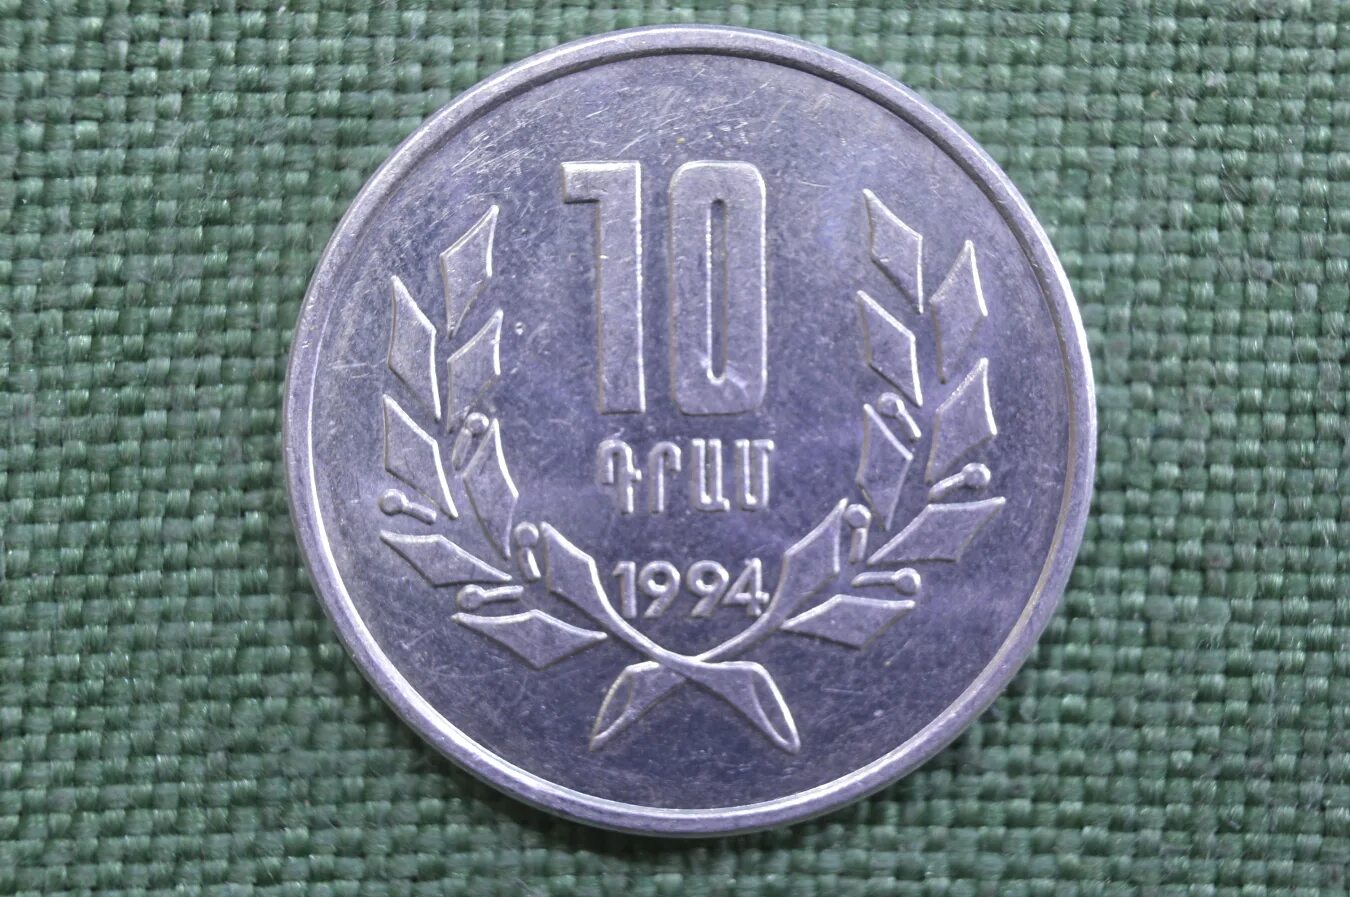 1000 рублей в драм на сегодня армении. 10 Драмов 1994 Армения. 10 Драм монета. 10 Драм 1994 года. Монеты Армении 1994.